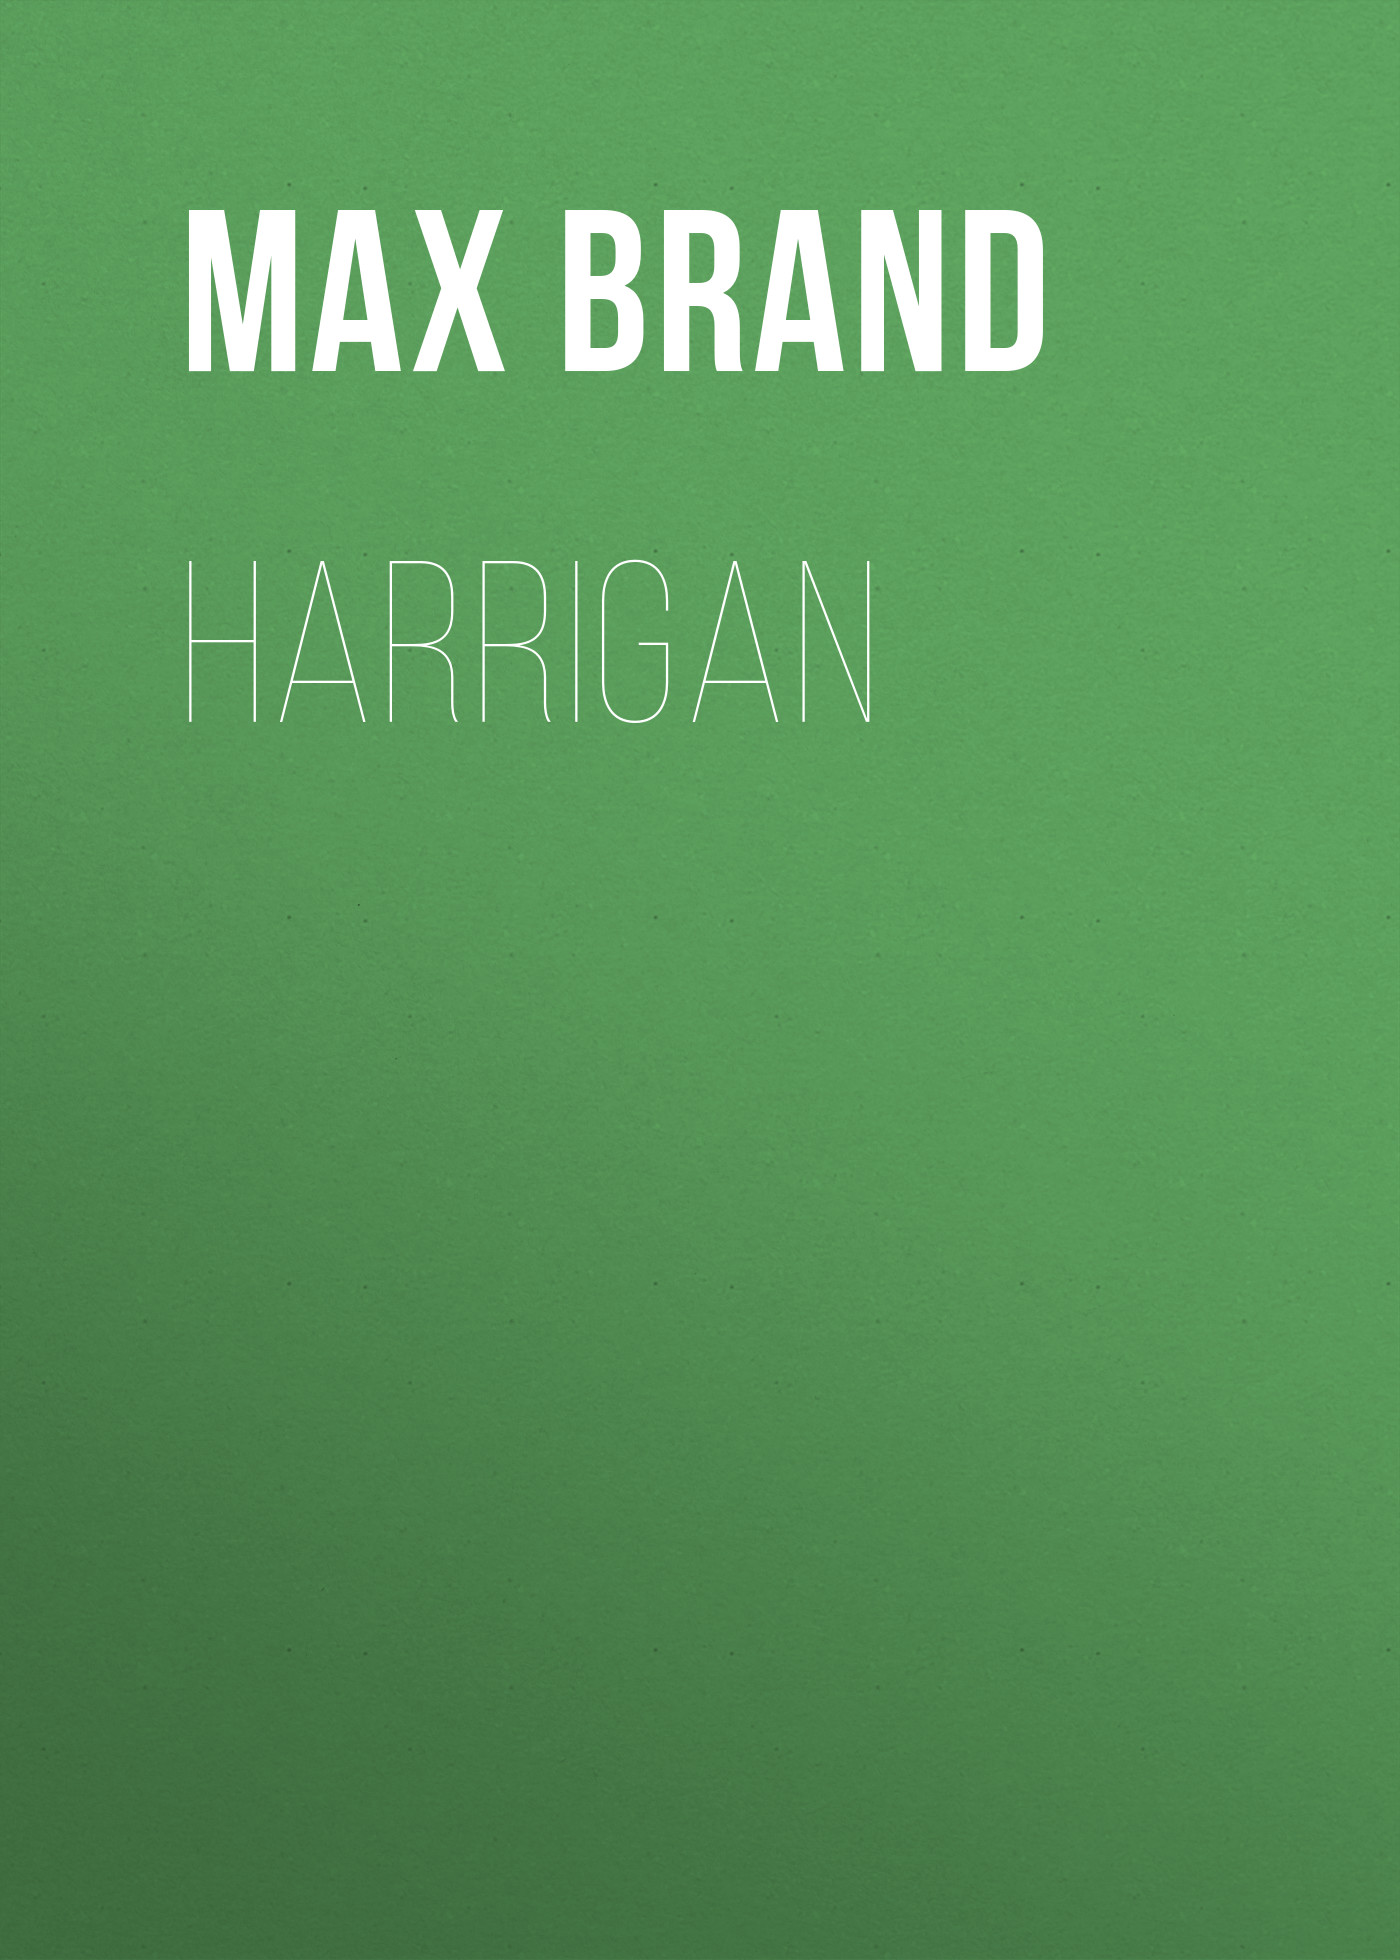 Книга Harrigan из серии , созданная Max Brand, может относится к жанру Зарубежная классика, Литература 20 века, Зарубежная старинная литература. Стоимость электронной книги Harrigan с идентификатором 42627459 составляет 0 руб.